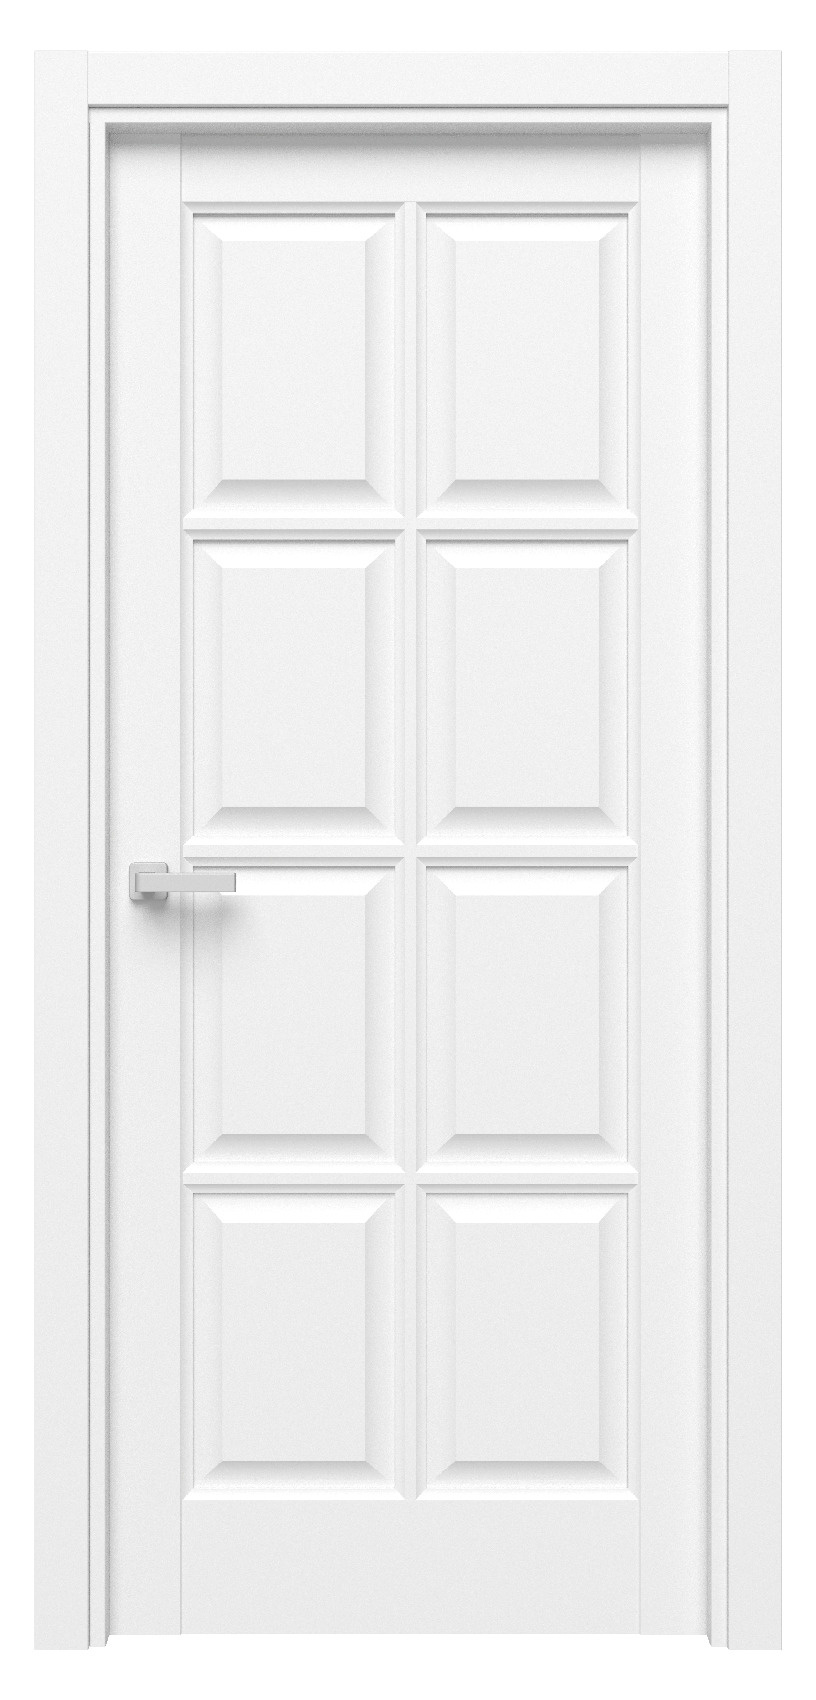 Questdoors Межкомнатная дверь QD9, арт. 17522 - фото №1